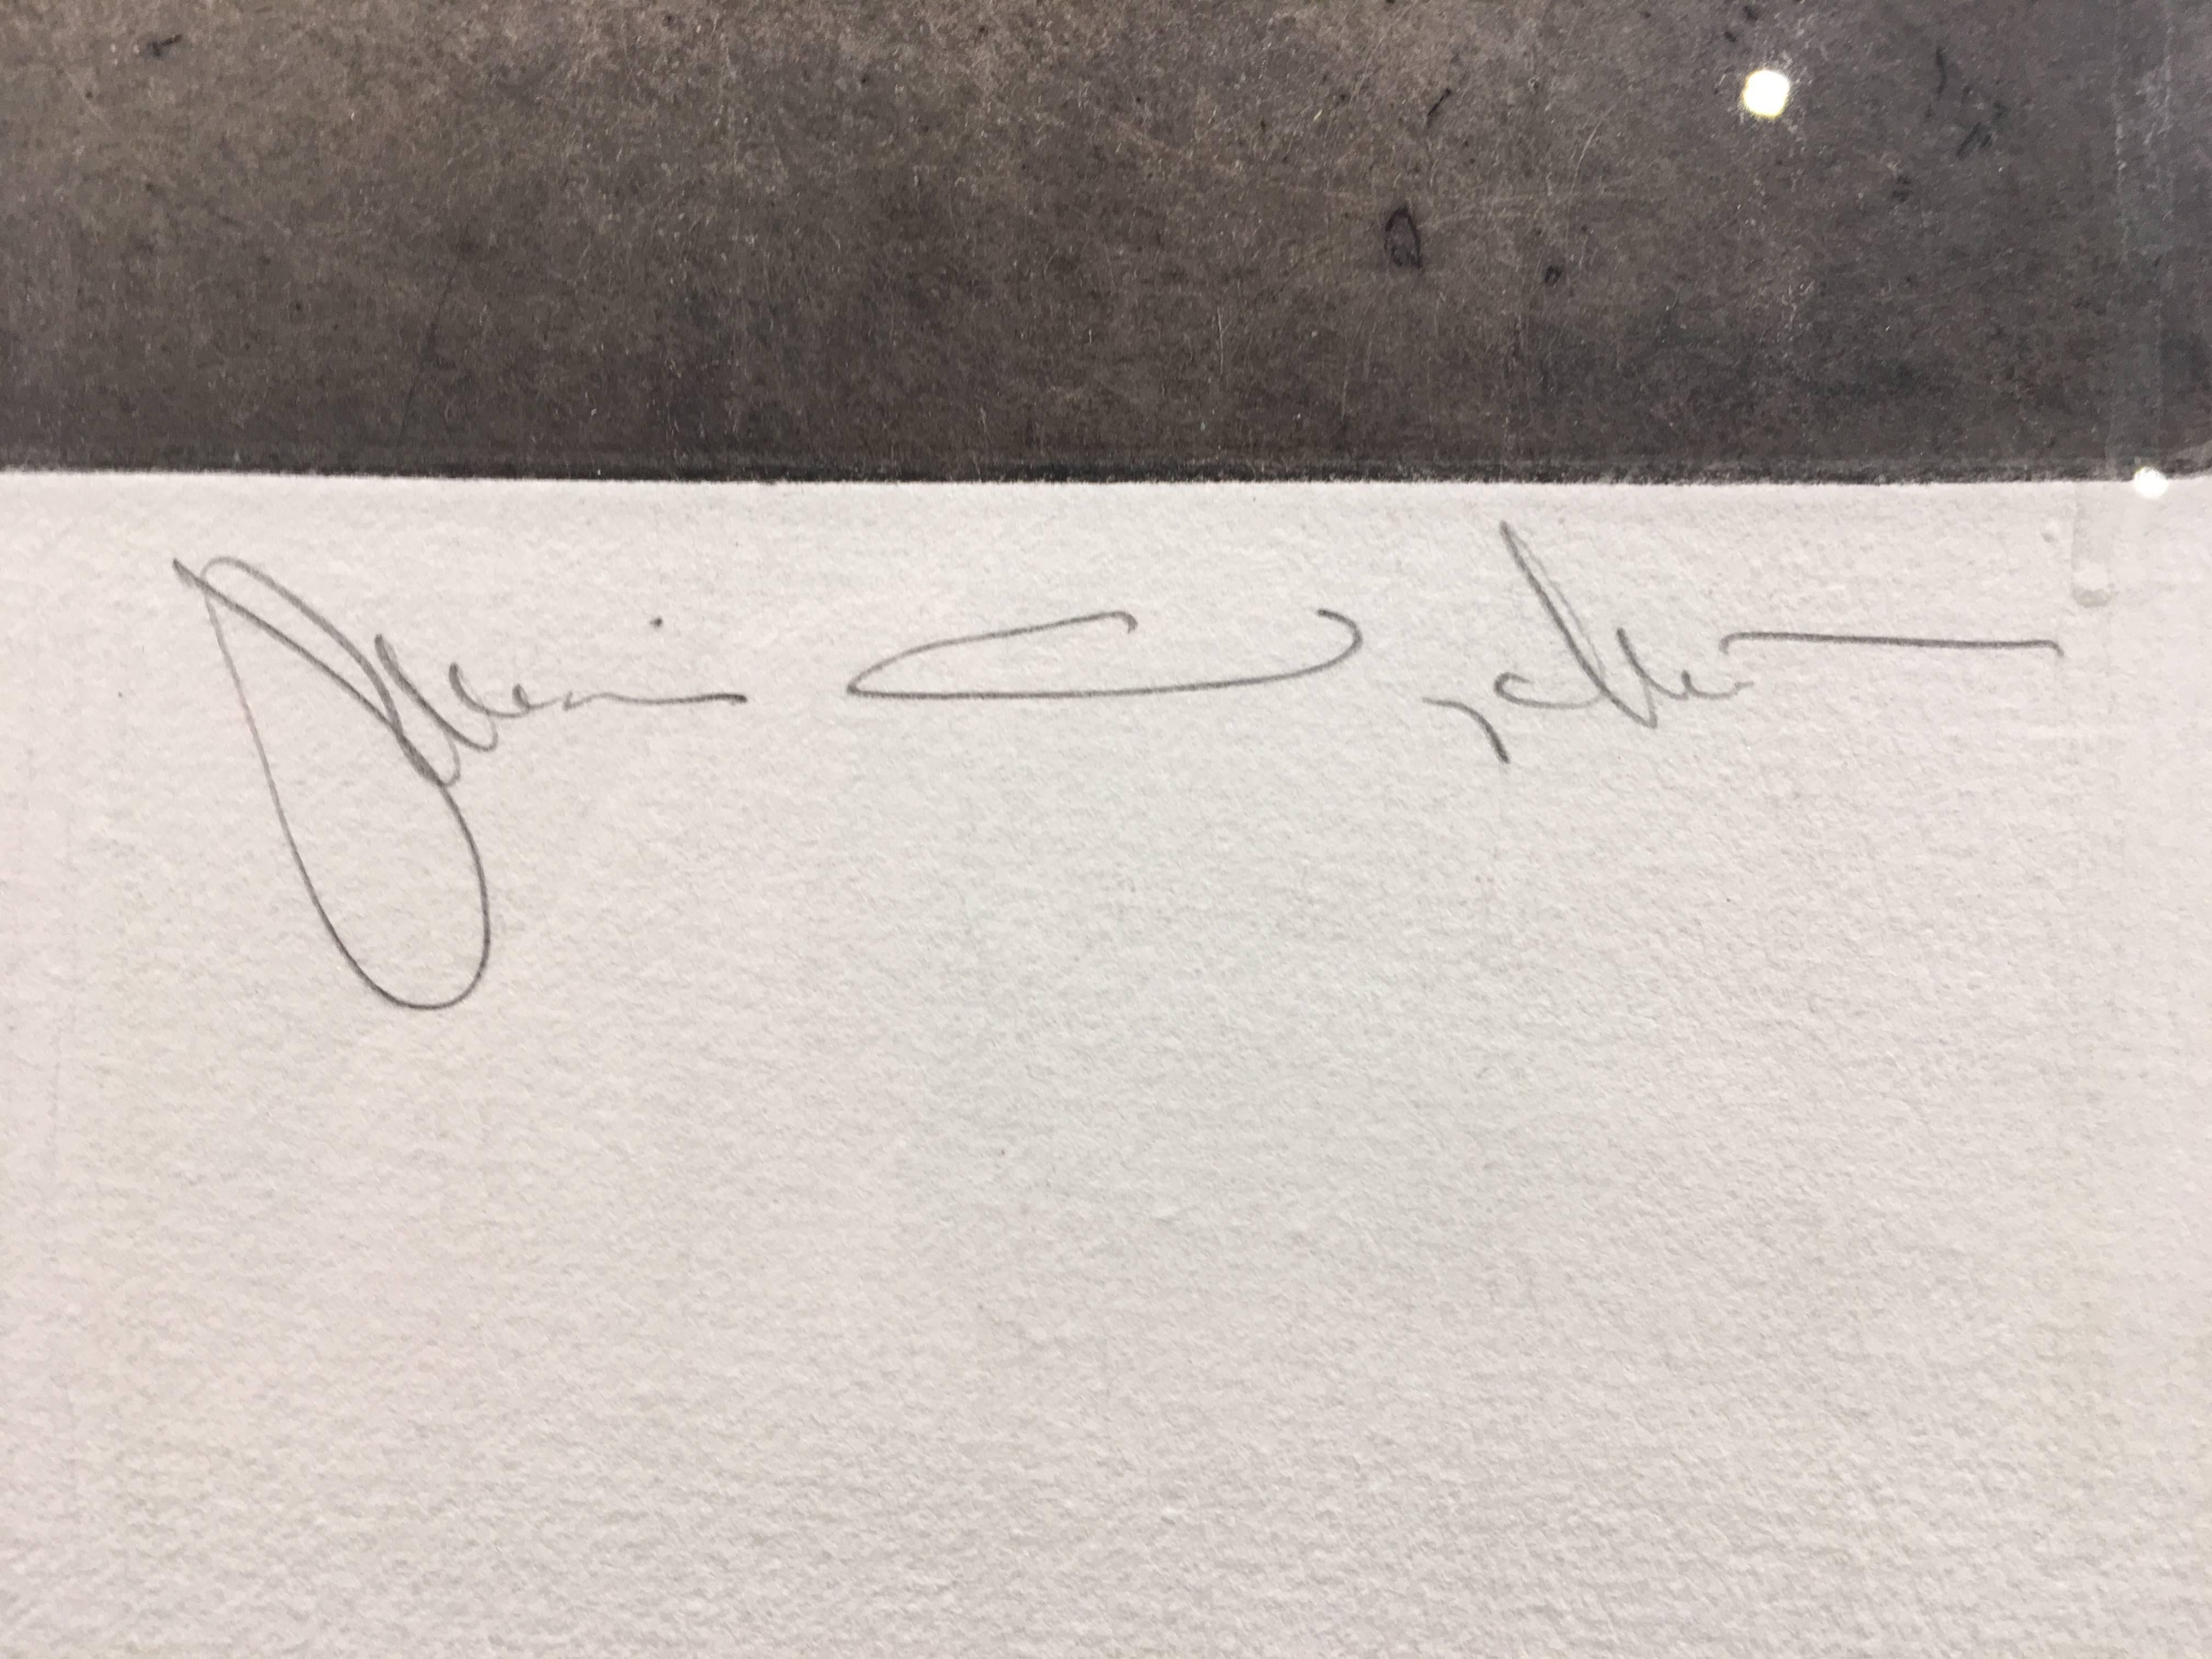 Auflage 108/150, gerahmt
Blattgröße: 25 x 20 Zoll
Bildgröße: 9,75 x 9,75 Zoll
Rahmengröße: 28 x 23 Zoll
Signiert unten links: 108/150
Signiert unten rechts: Jamie Wyeth

Jamie Wyeth (geb. 1946) ist ein Künstler der dritten Generation, der sich als